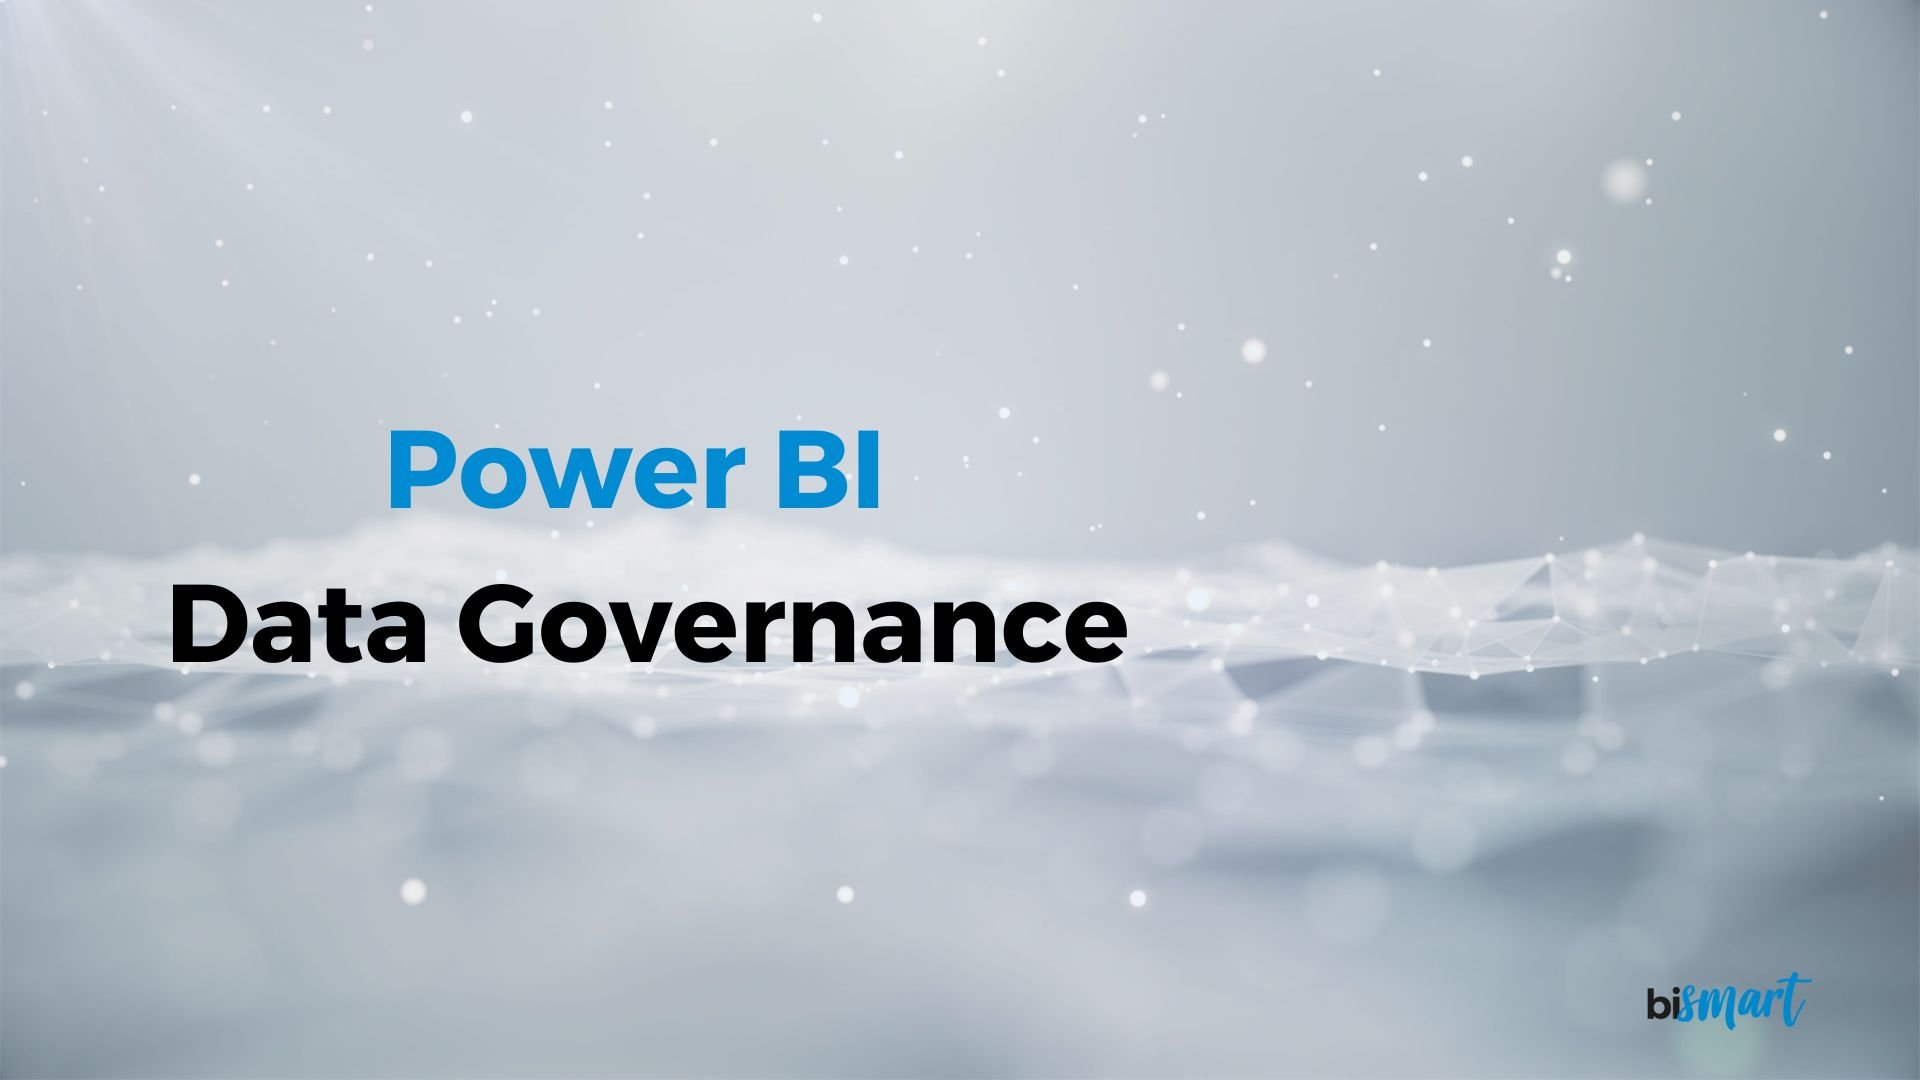 Power BI Data Governance